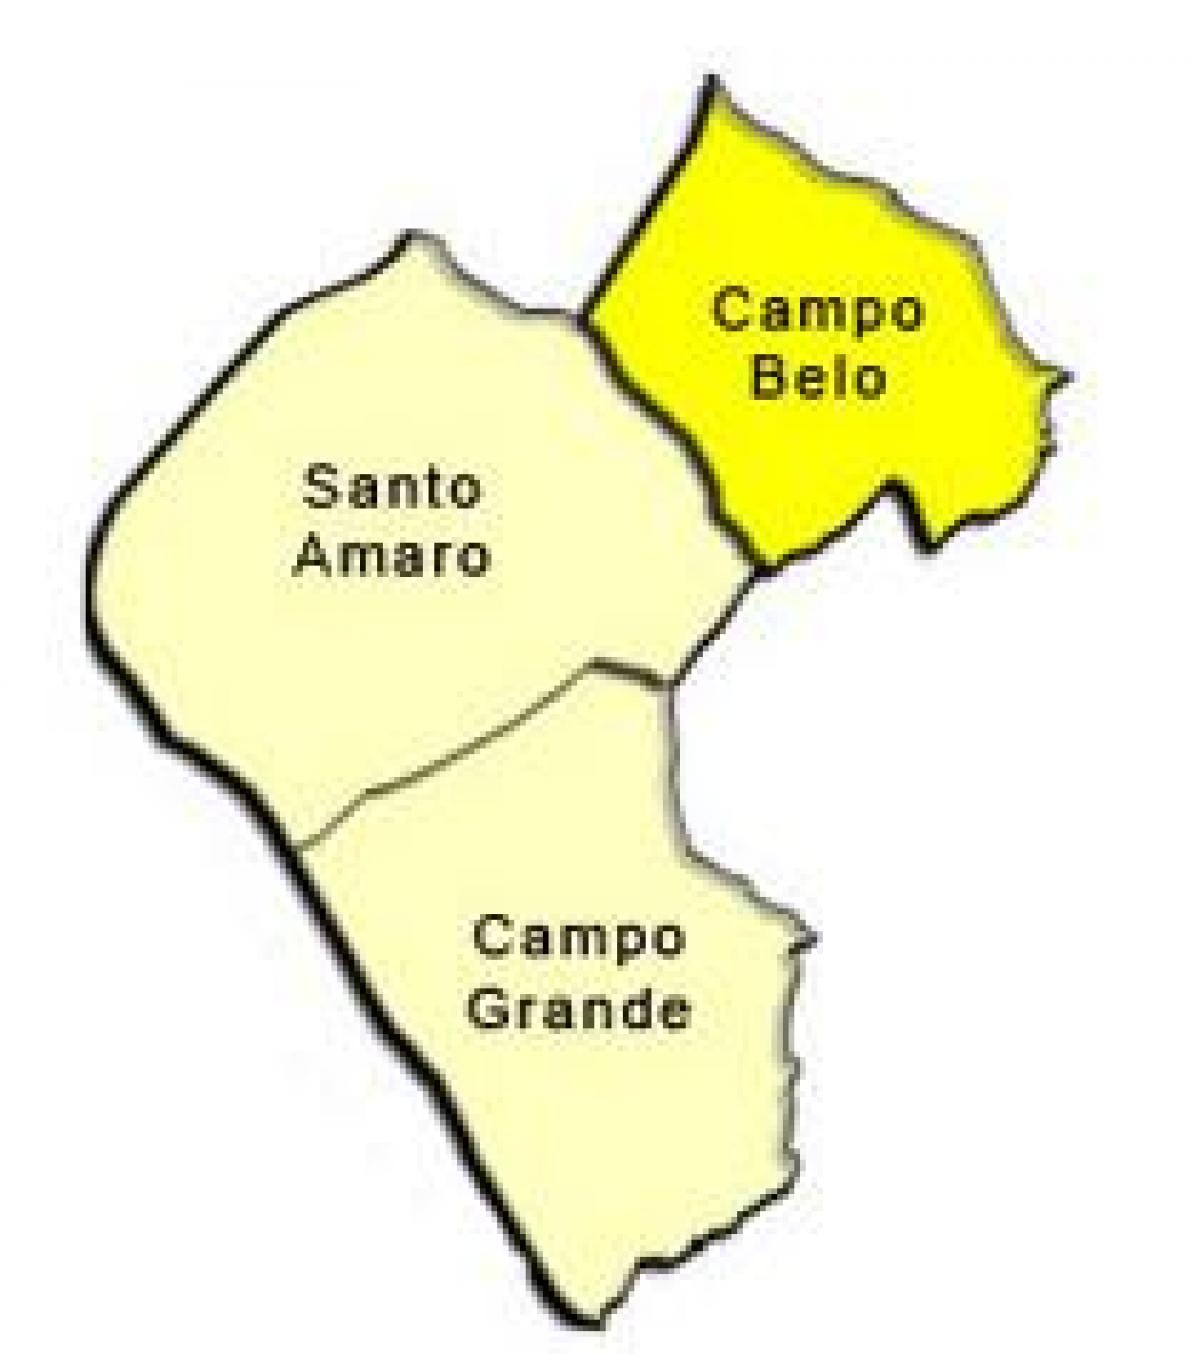 מפה של סנטו אמארו תת-פריפקטורה